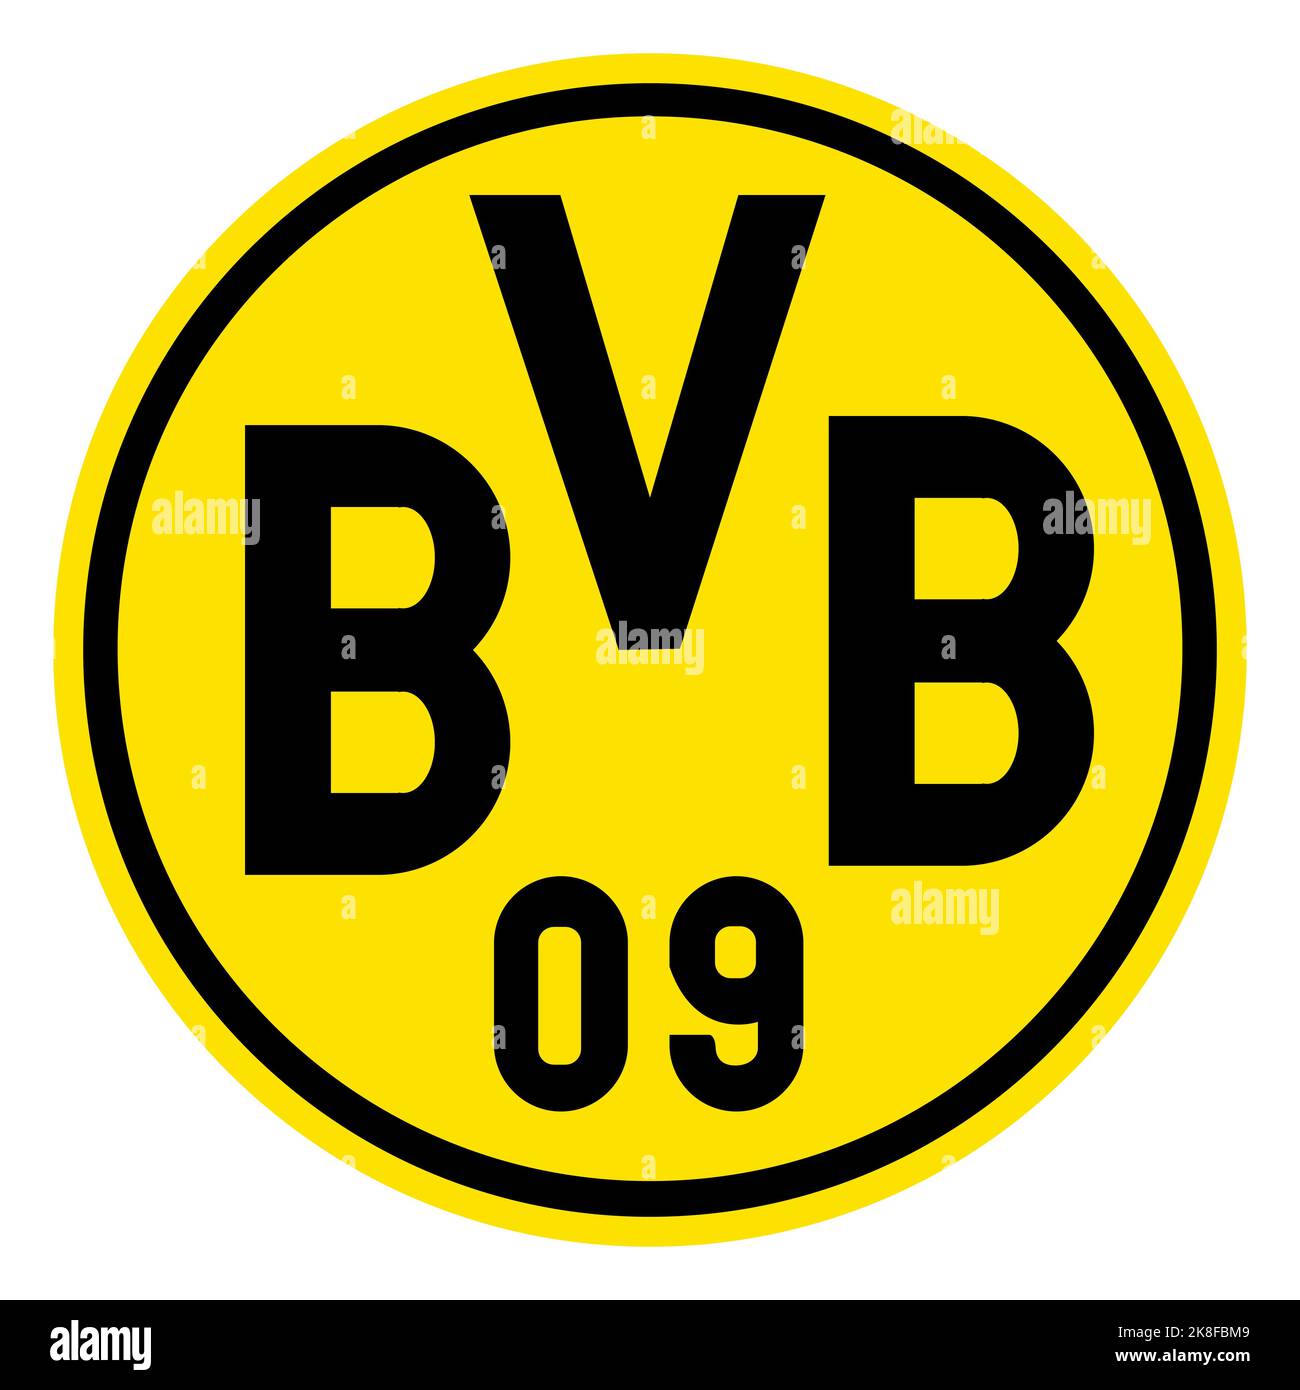 Francfort-sur-le-main, Allemagne - 10.23.2022 logo du club de football allemand Borussia Dortmund. Image vectorielle Illustration de Vecteur